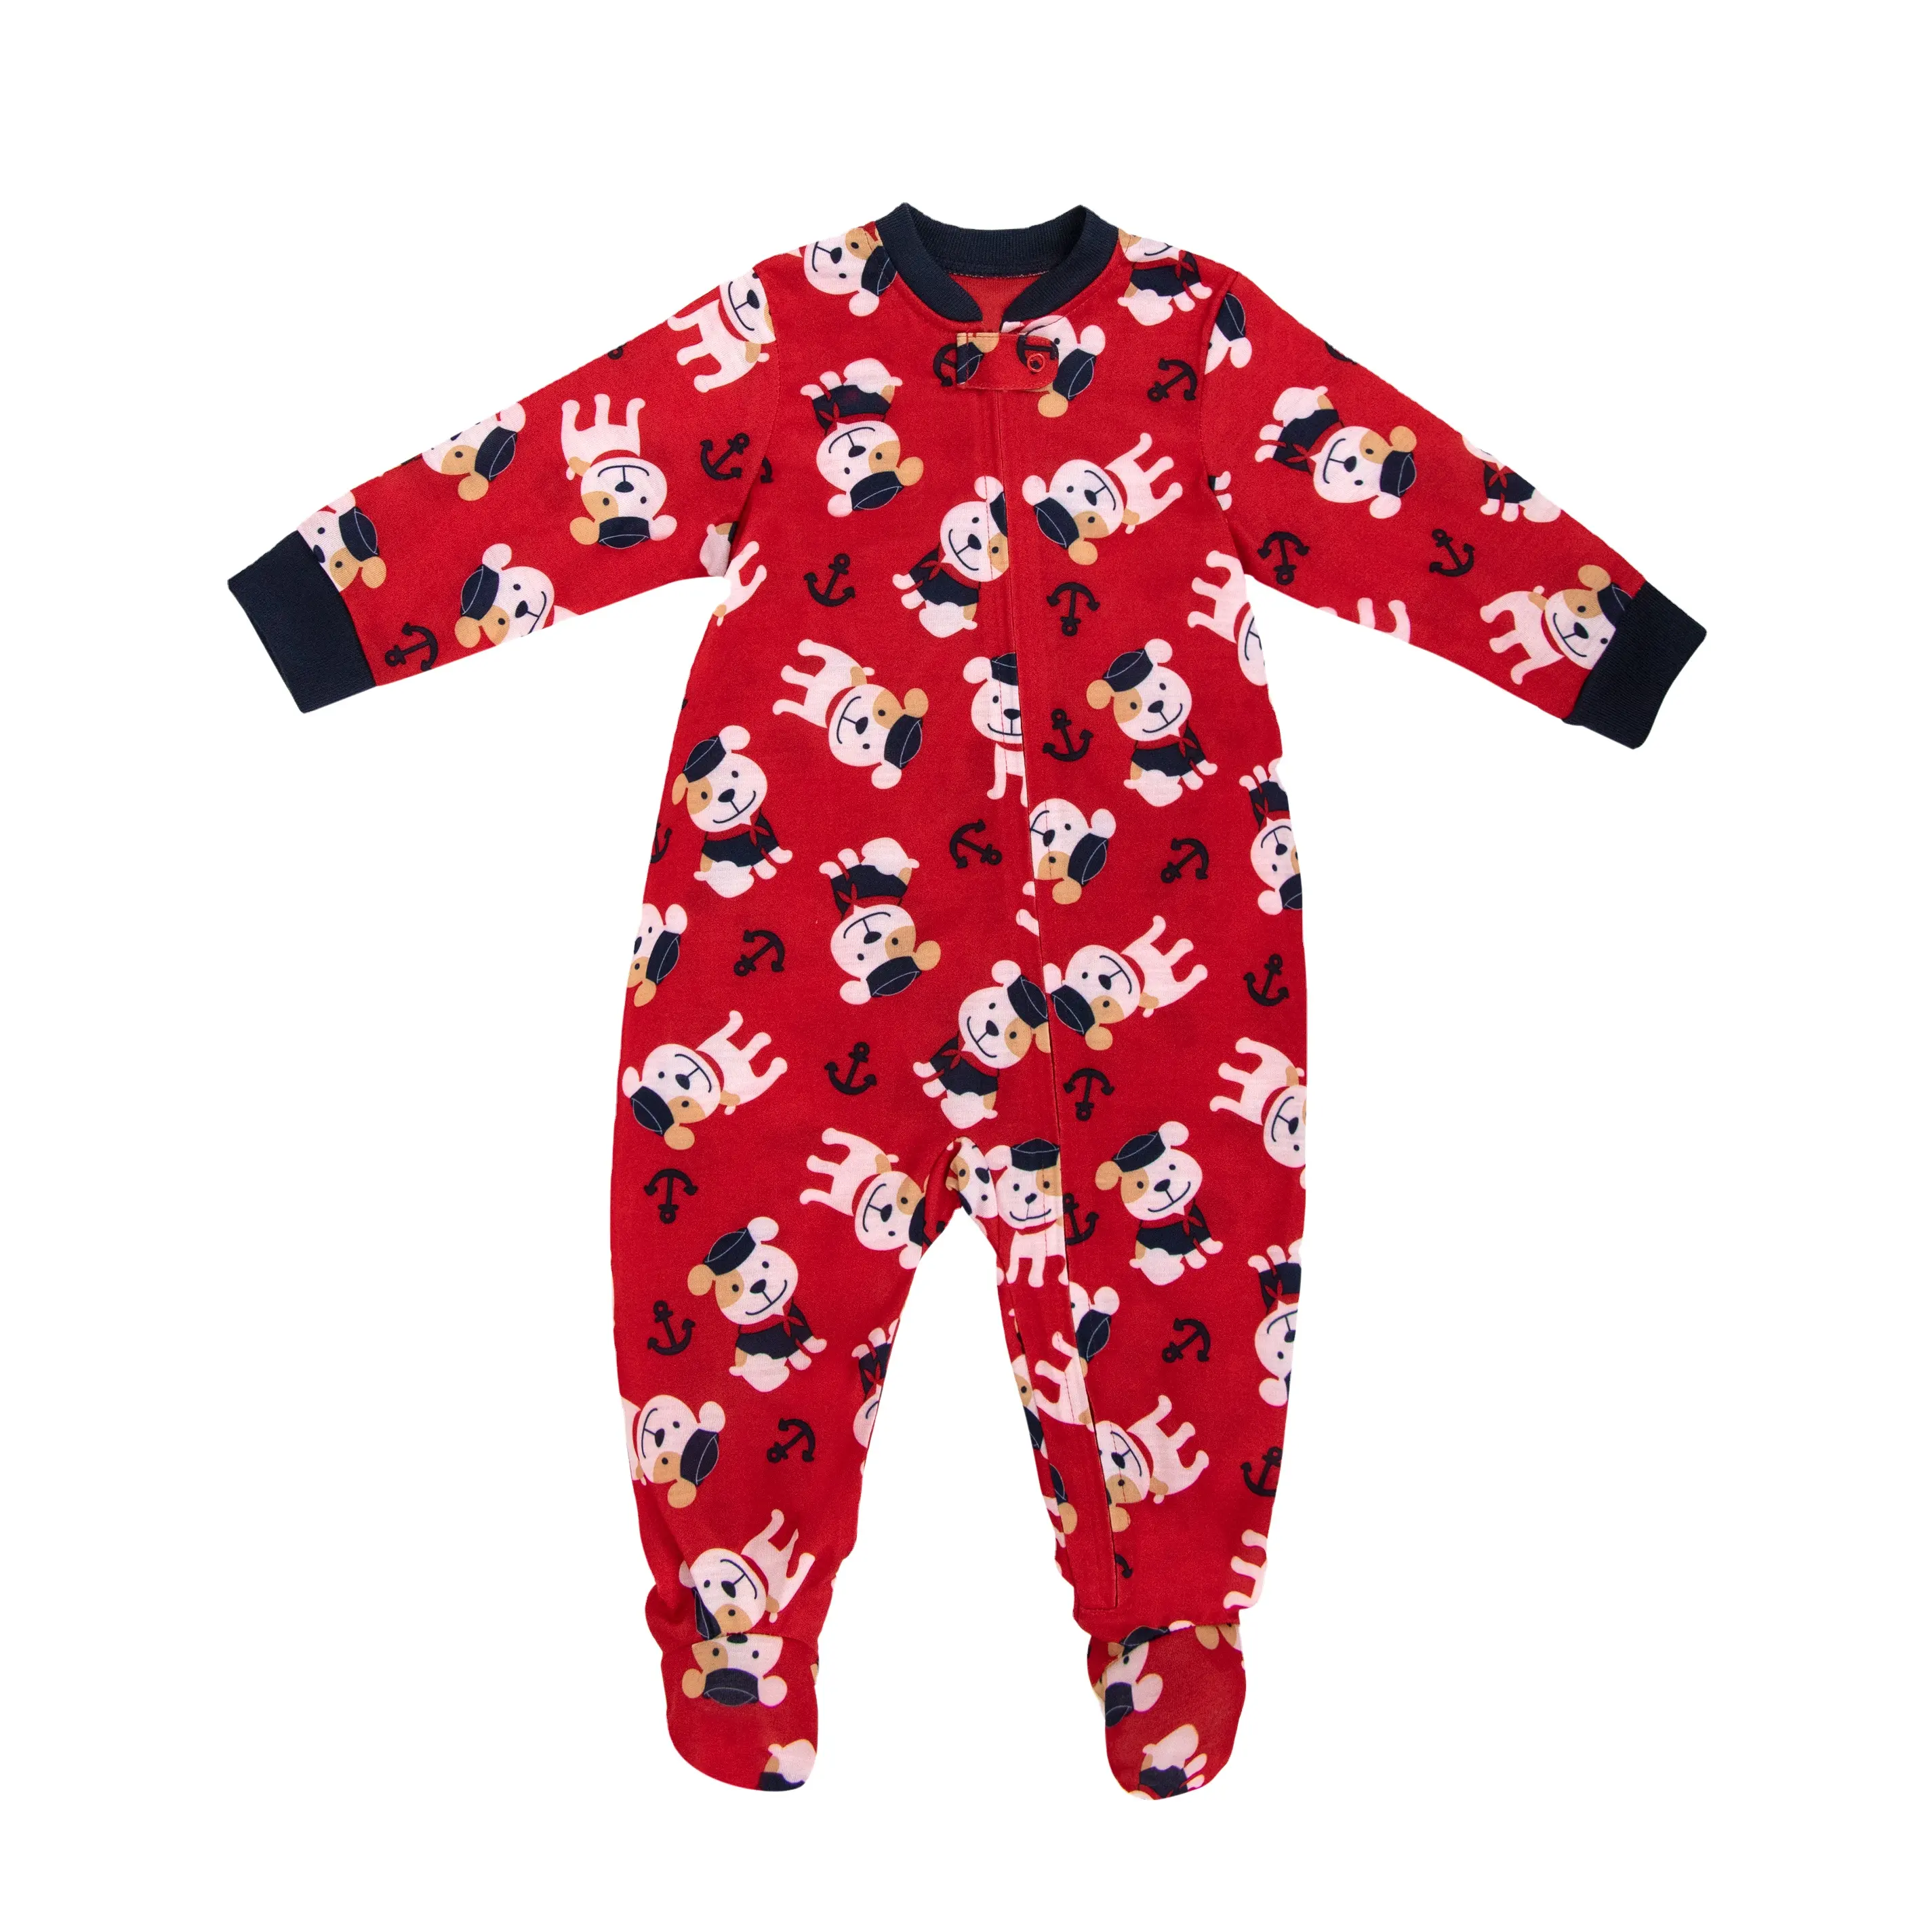 JOYUAN เสื้อผ้าสำเร็จรูปสำหรับเด็ก,ชุดหมีสีแดงพิมพ์ลายสำหรับเด็กทารกชุดนอนอยู่บ้านปี BR190805